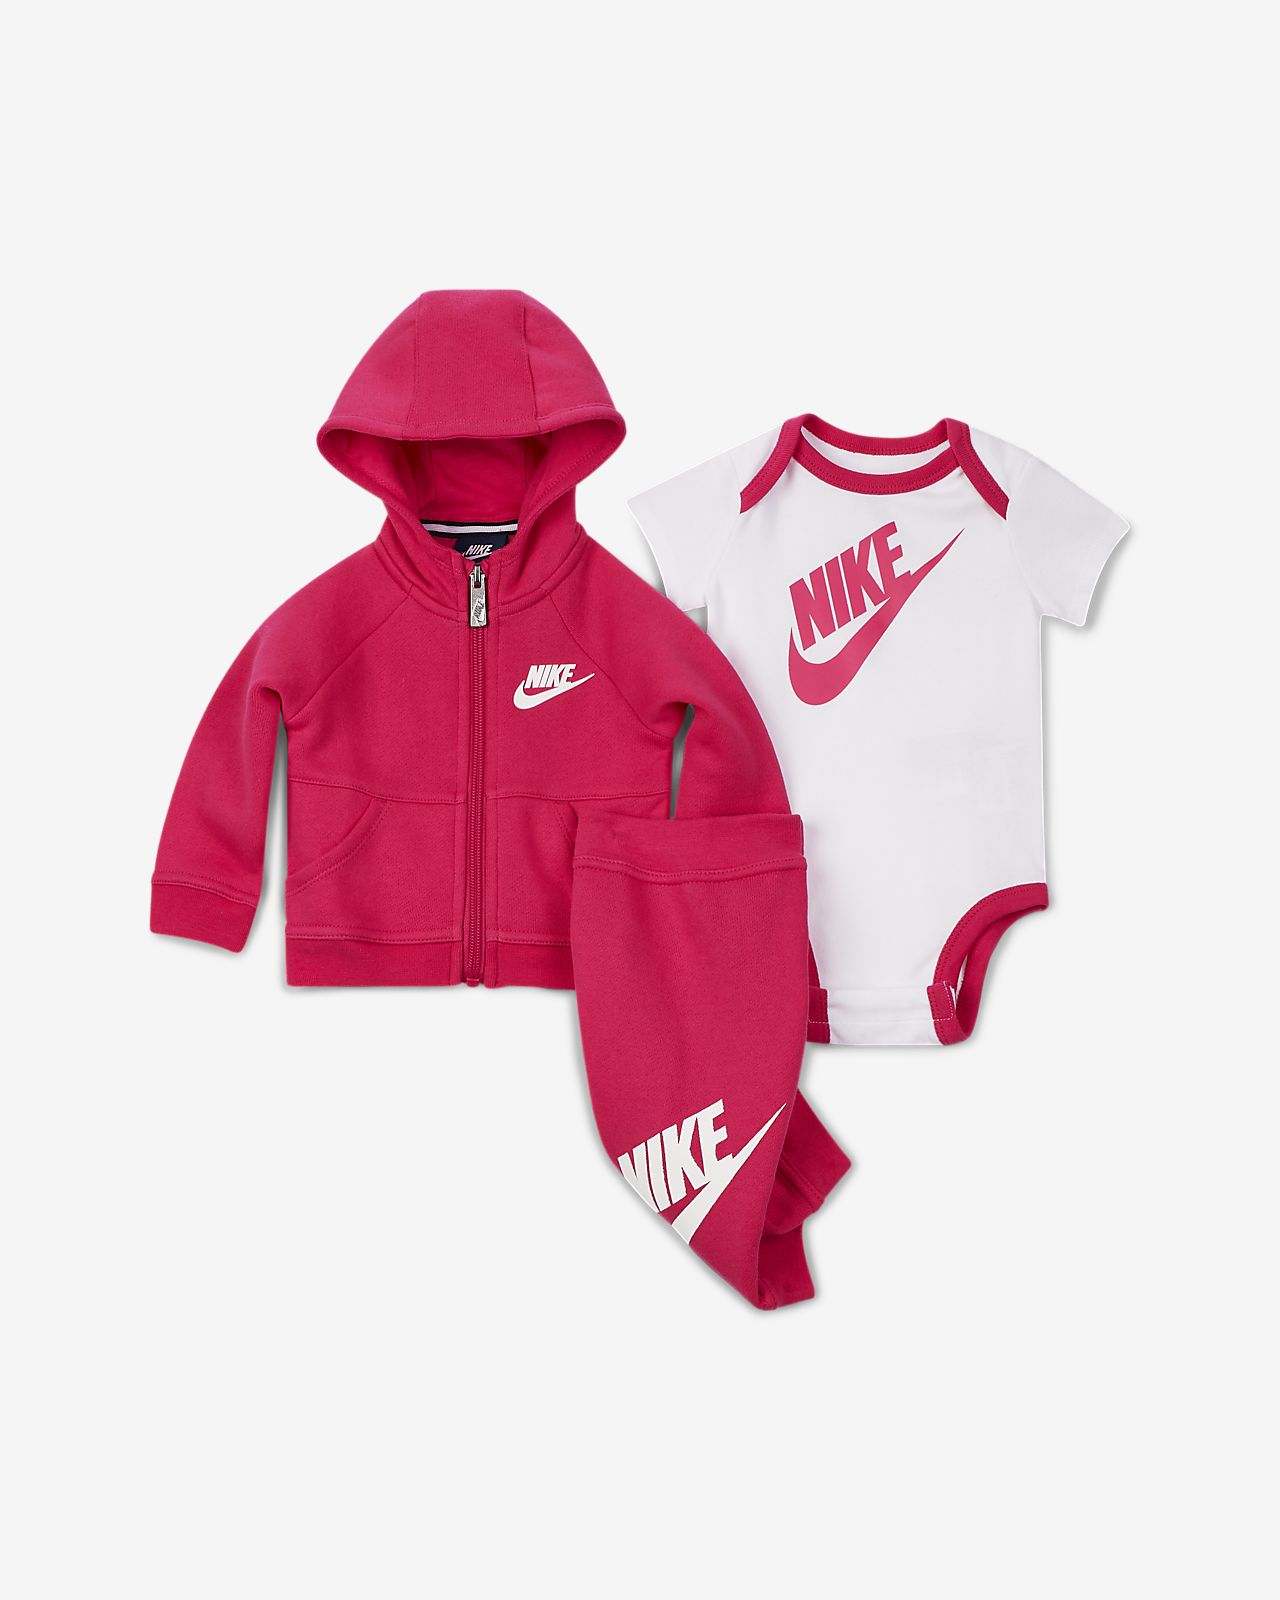 nike hoodies for babies